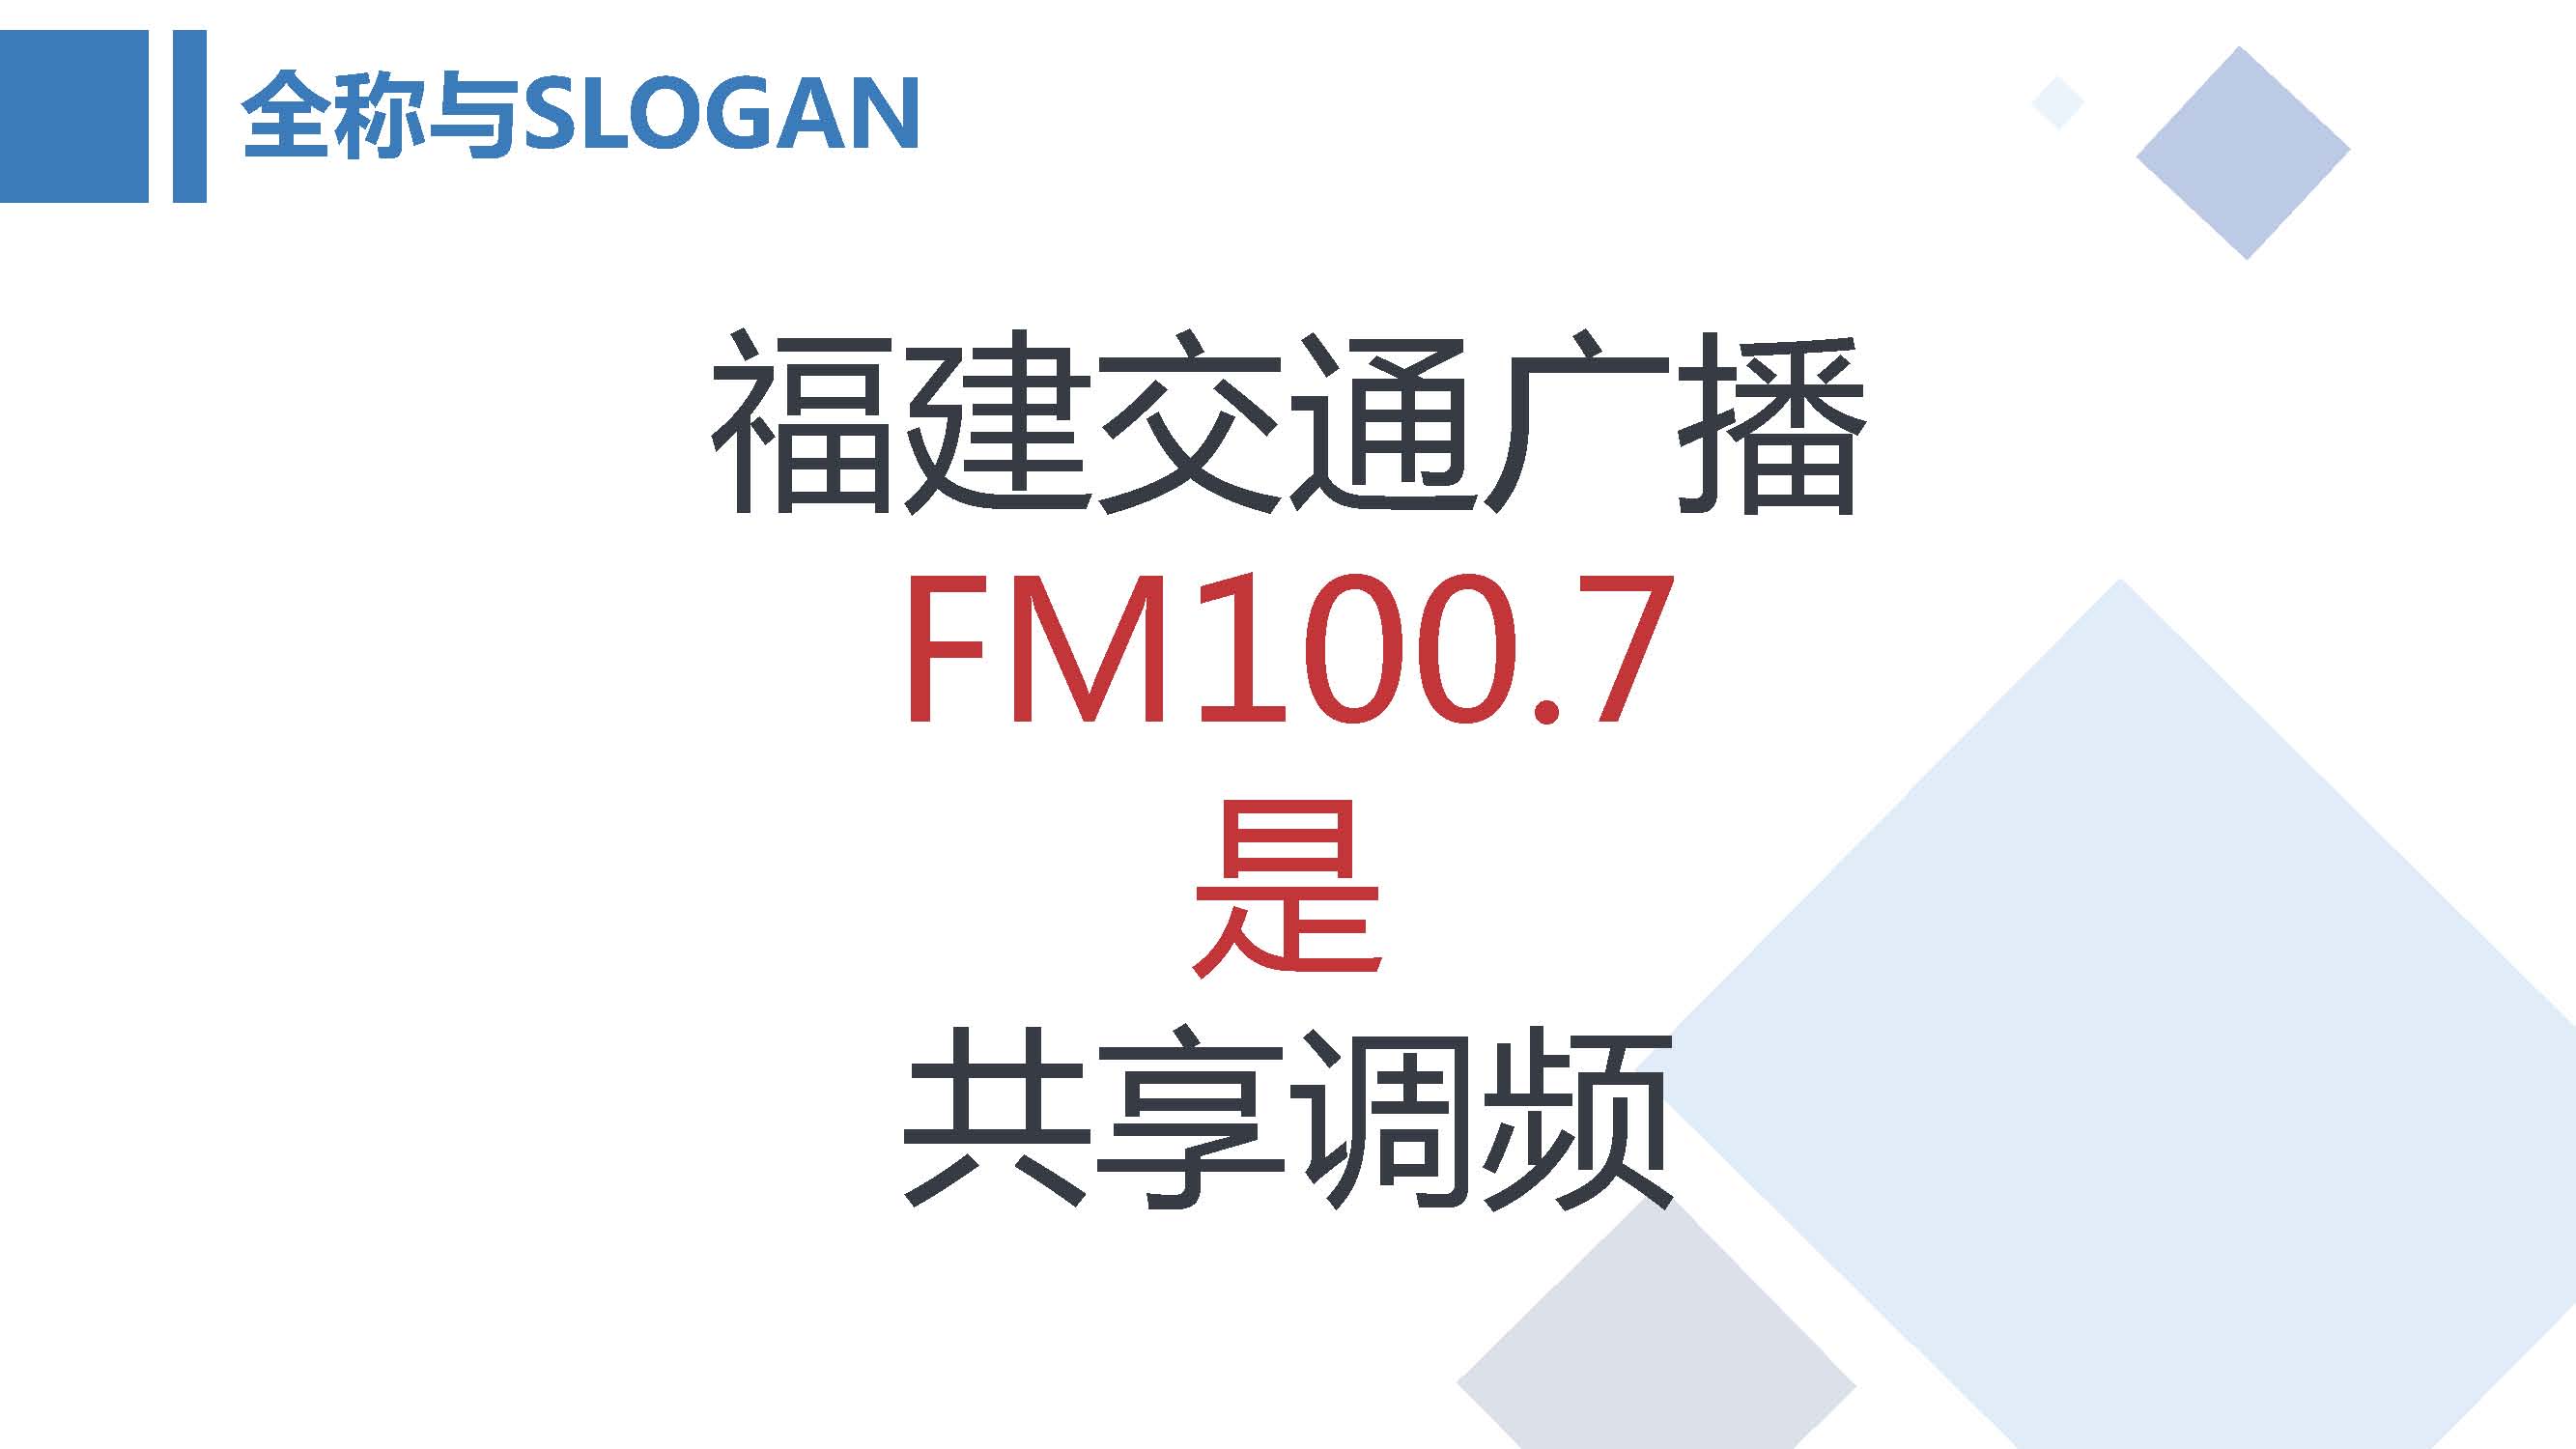 FM100.7福建交通广播媒体推介书2019年_页面_02.jpg